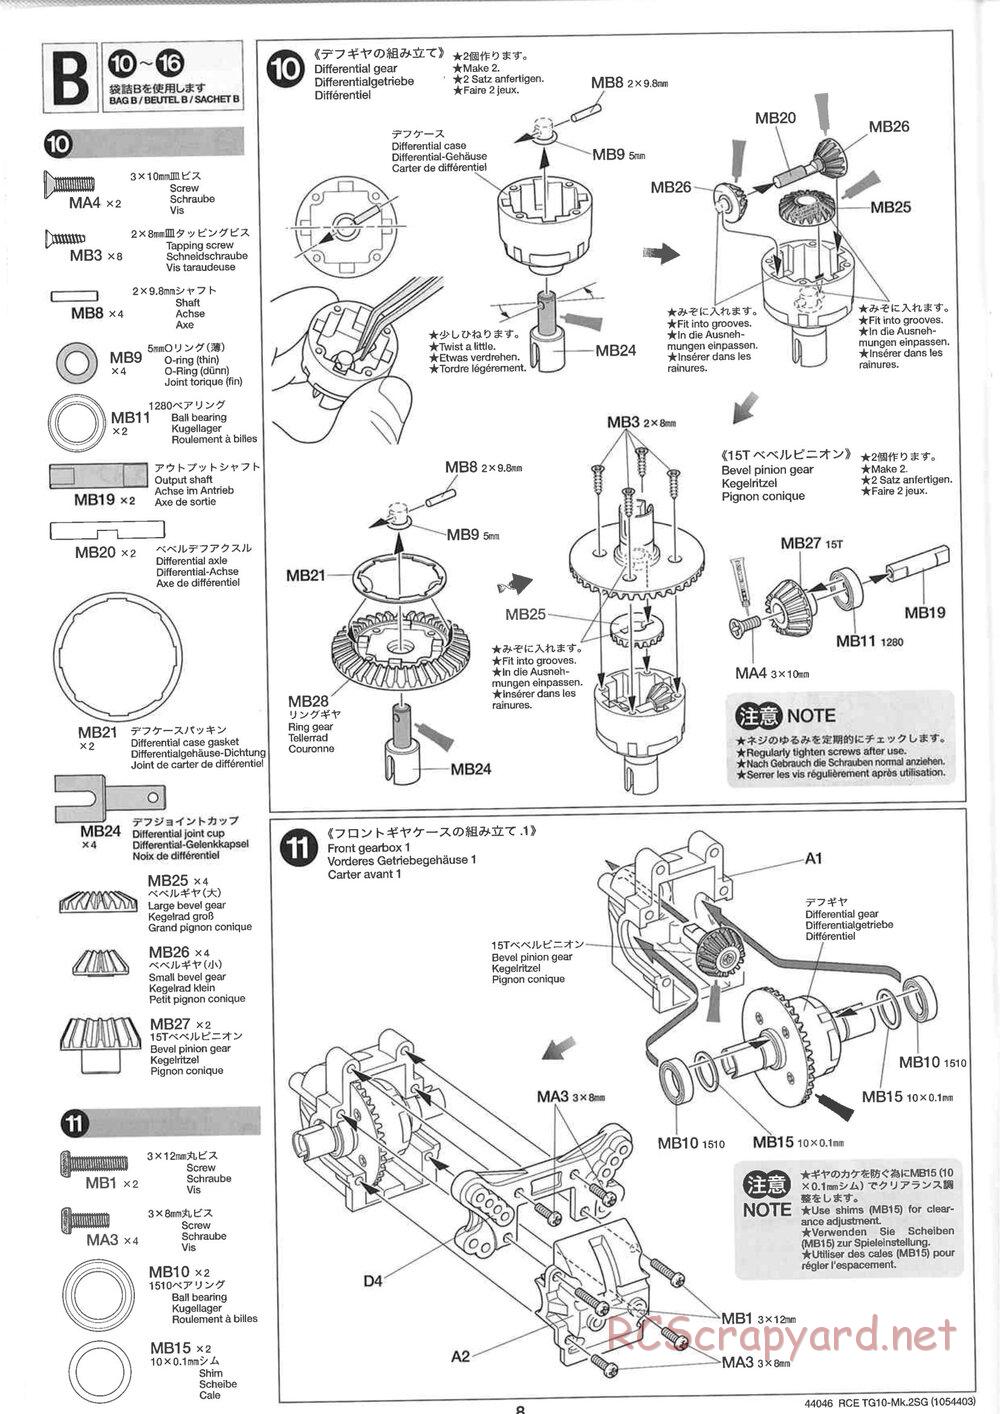 Tamiya - TG10 Mk.2SG Chassis - Manual - Page 8